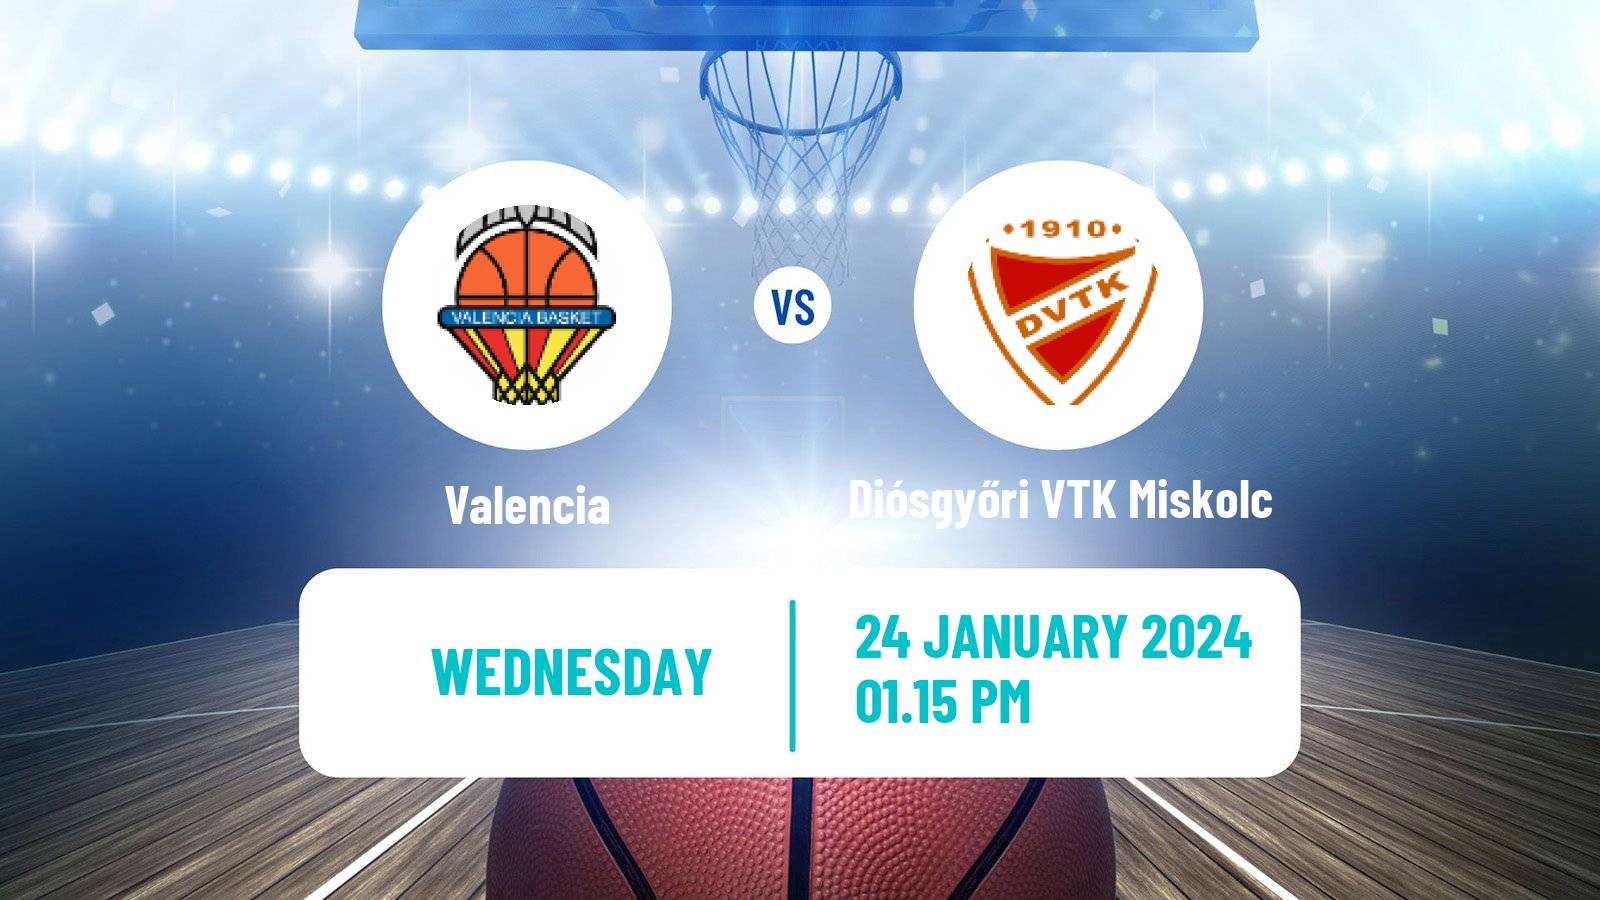 Basketball Euroleague Women Valencia - Diósgyőri VTK Miskolc